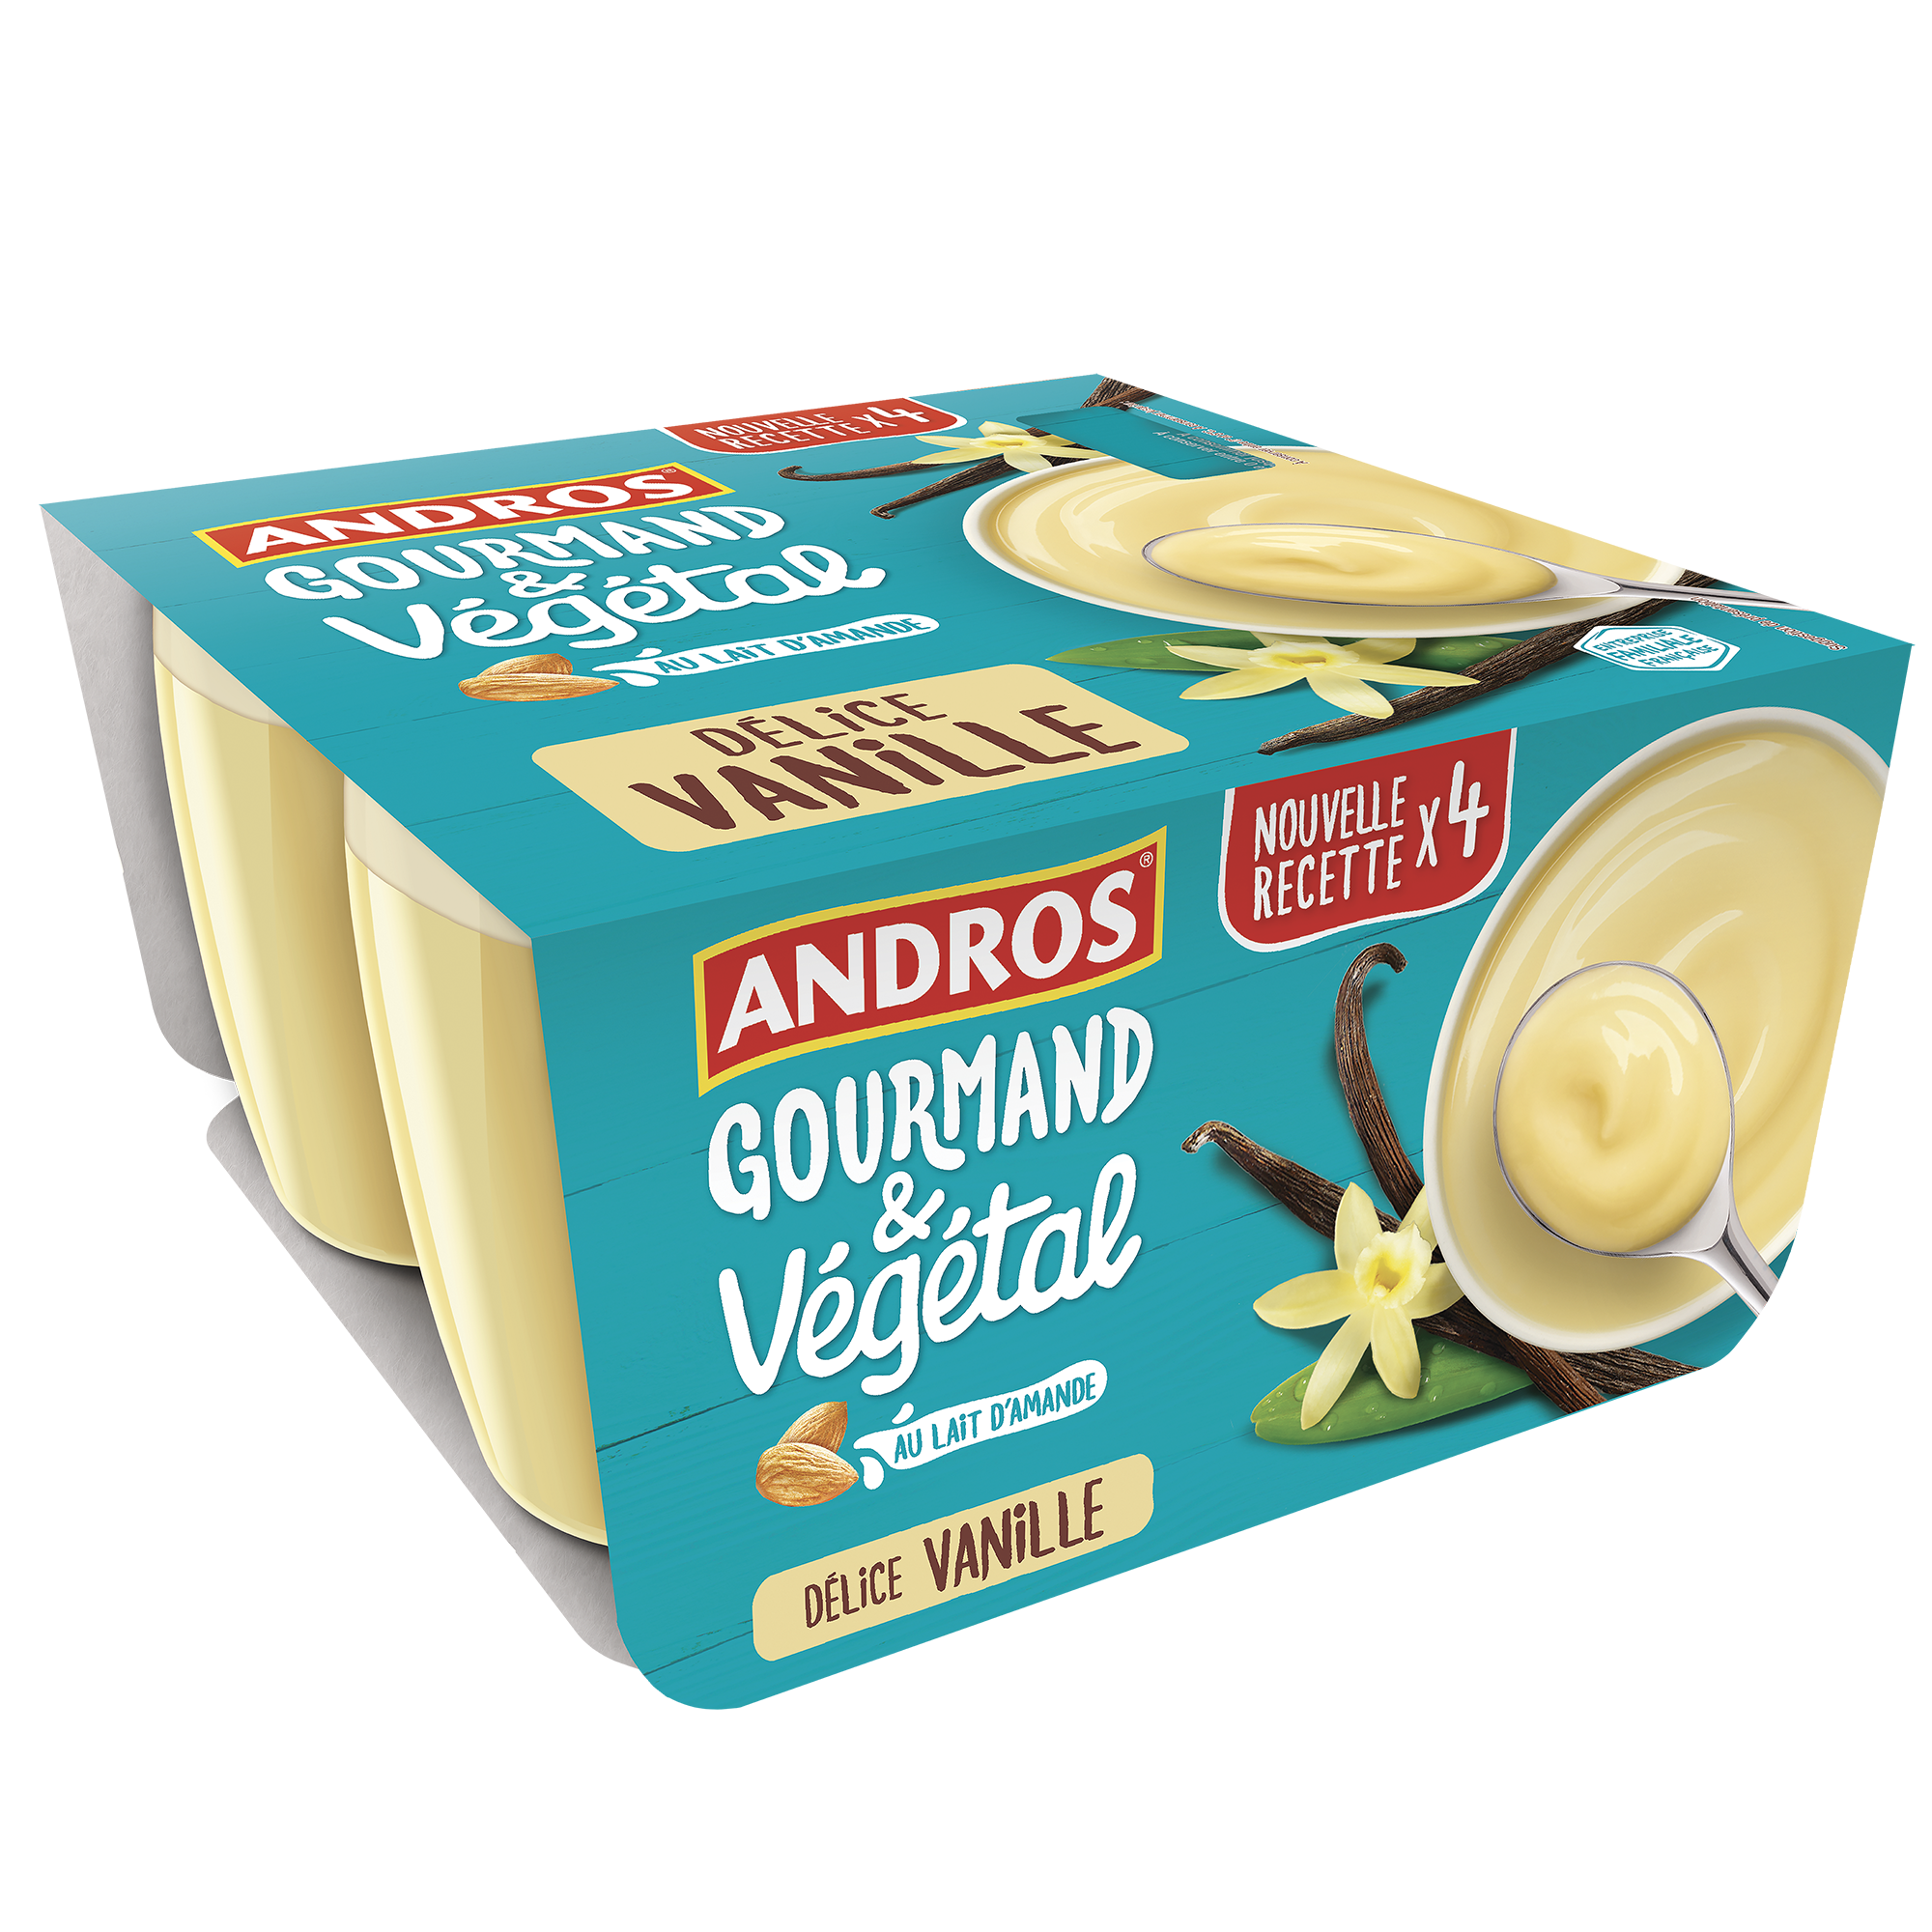 Délice vanille Andros Gourmand & Végétal